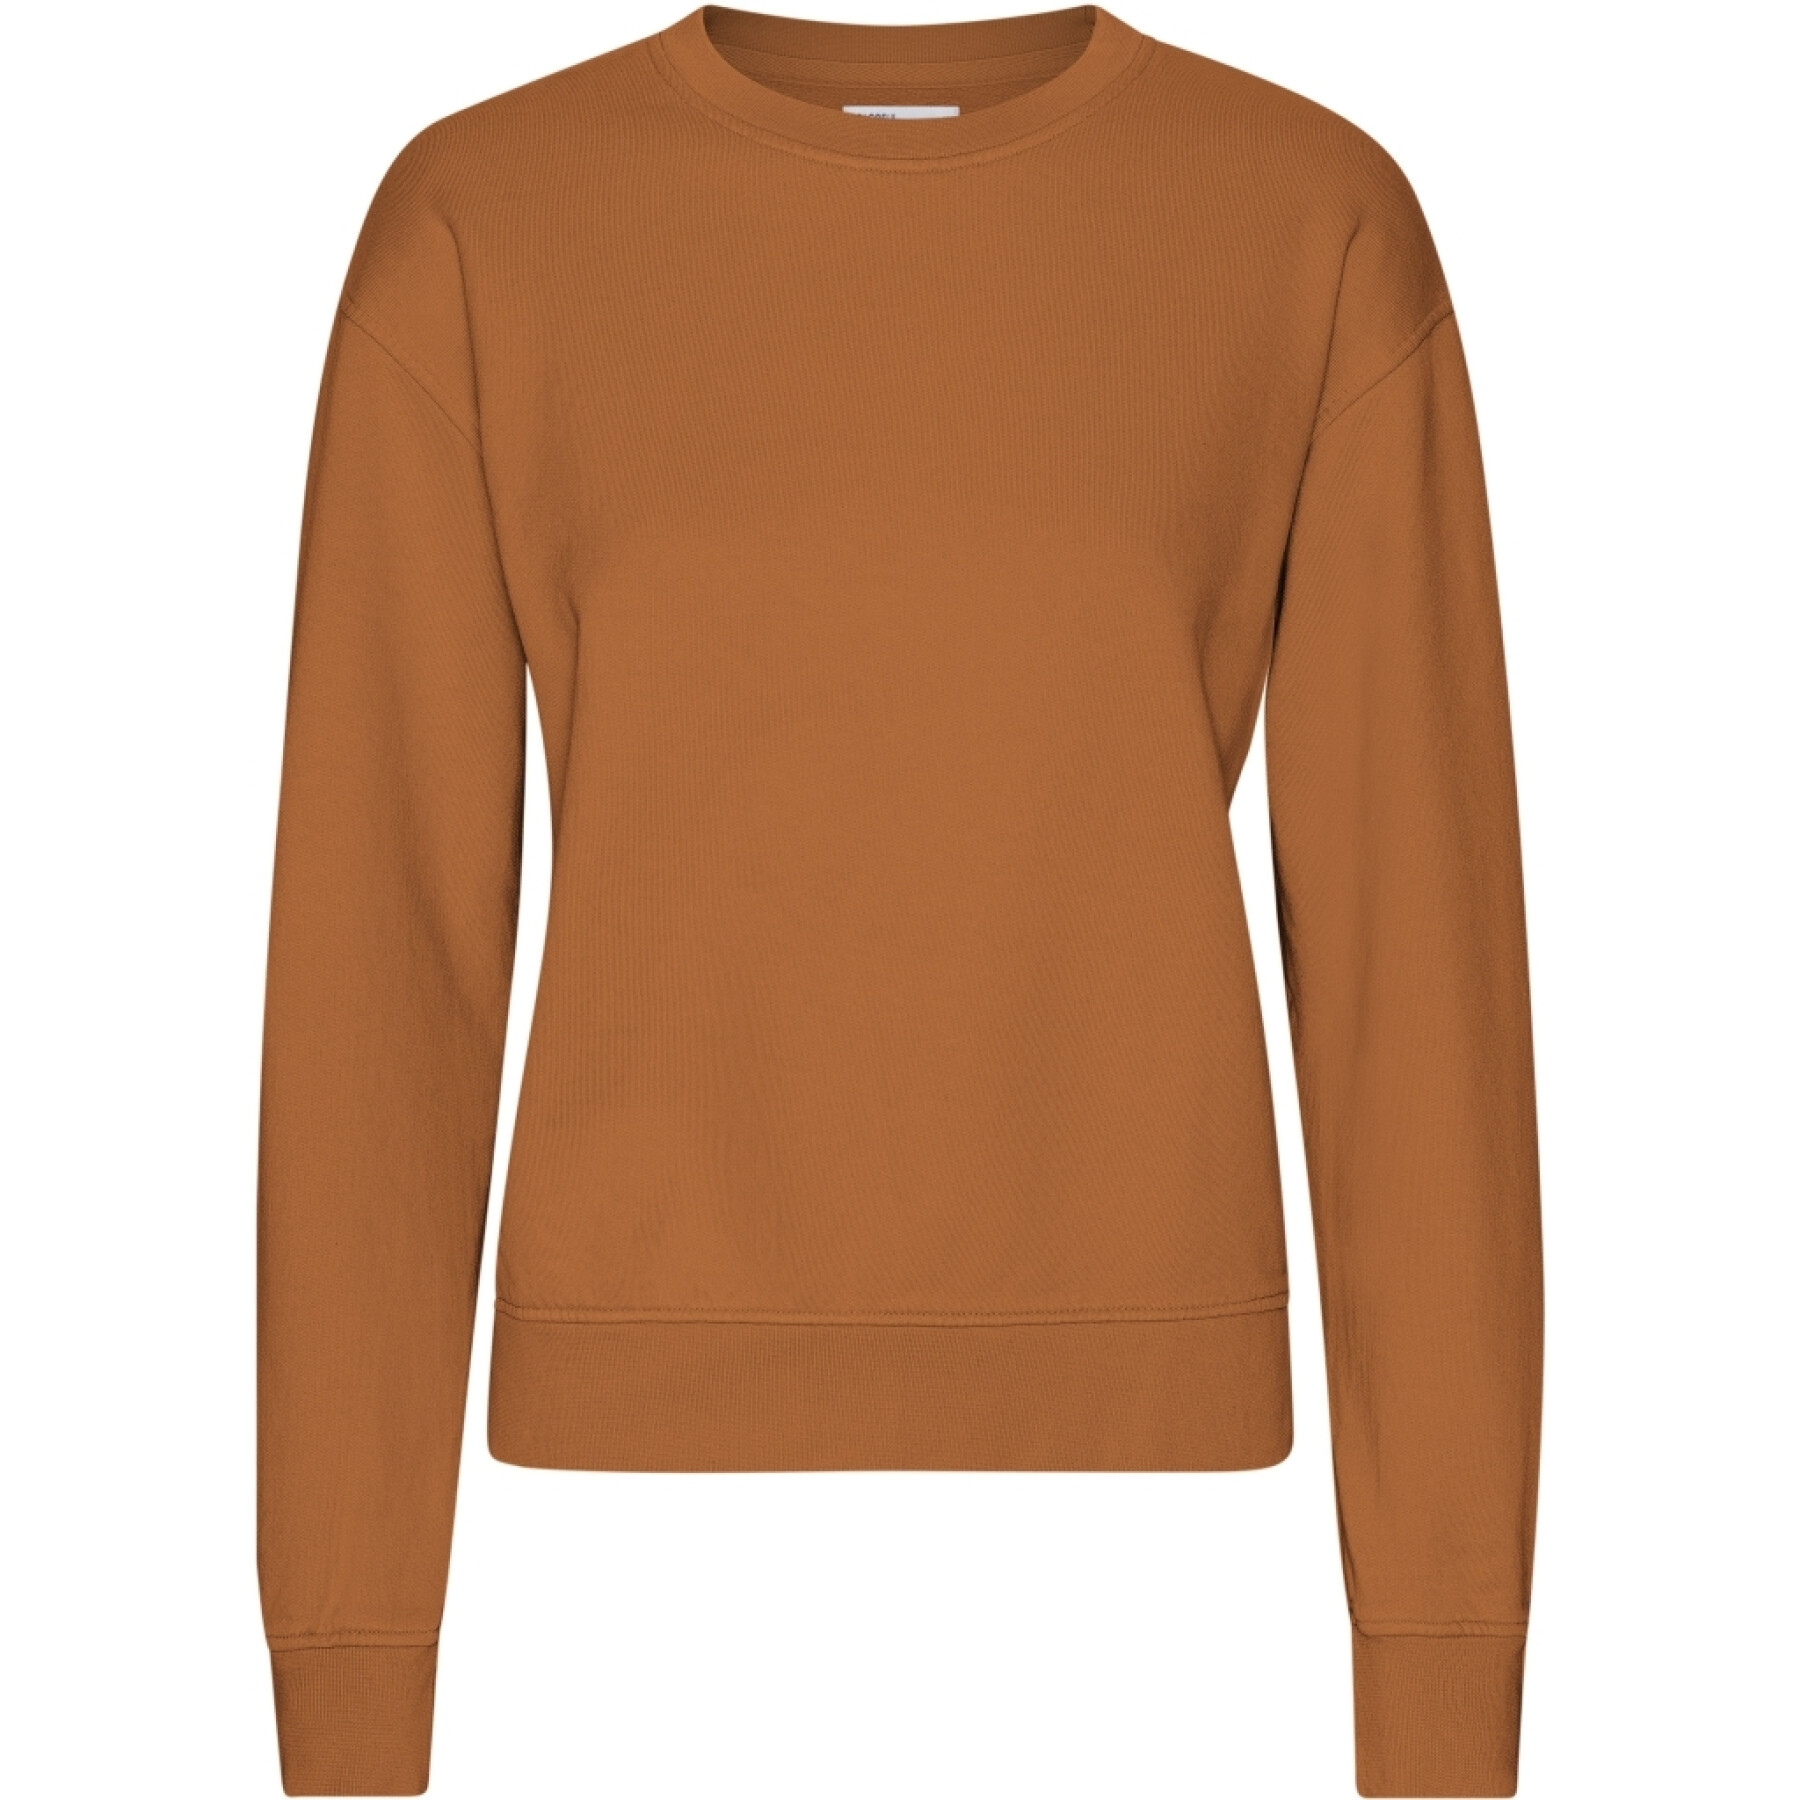 Sweatshirt mit Rundhalsausschnitt, Damen Colorful Standard Classic Organic Ginger Brown